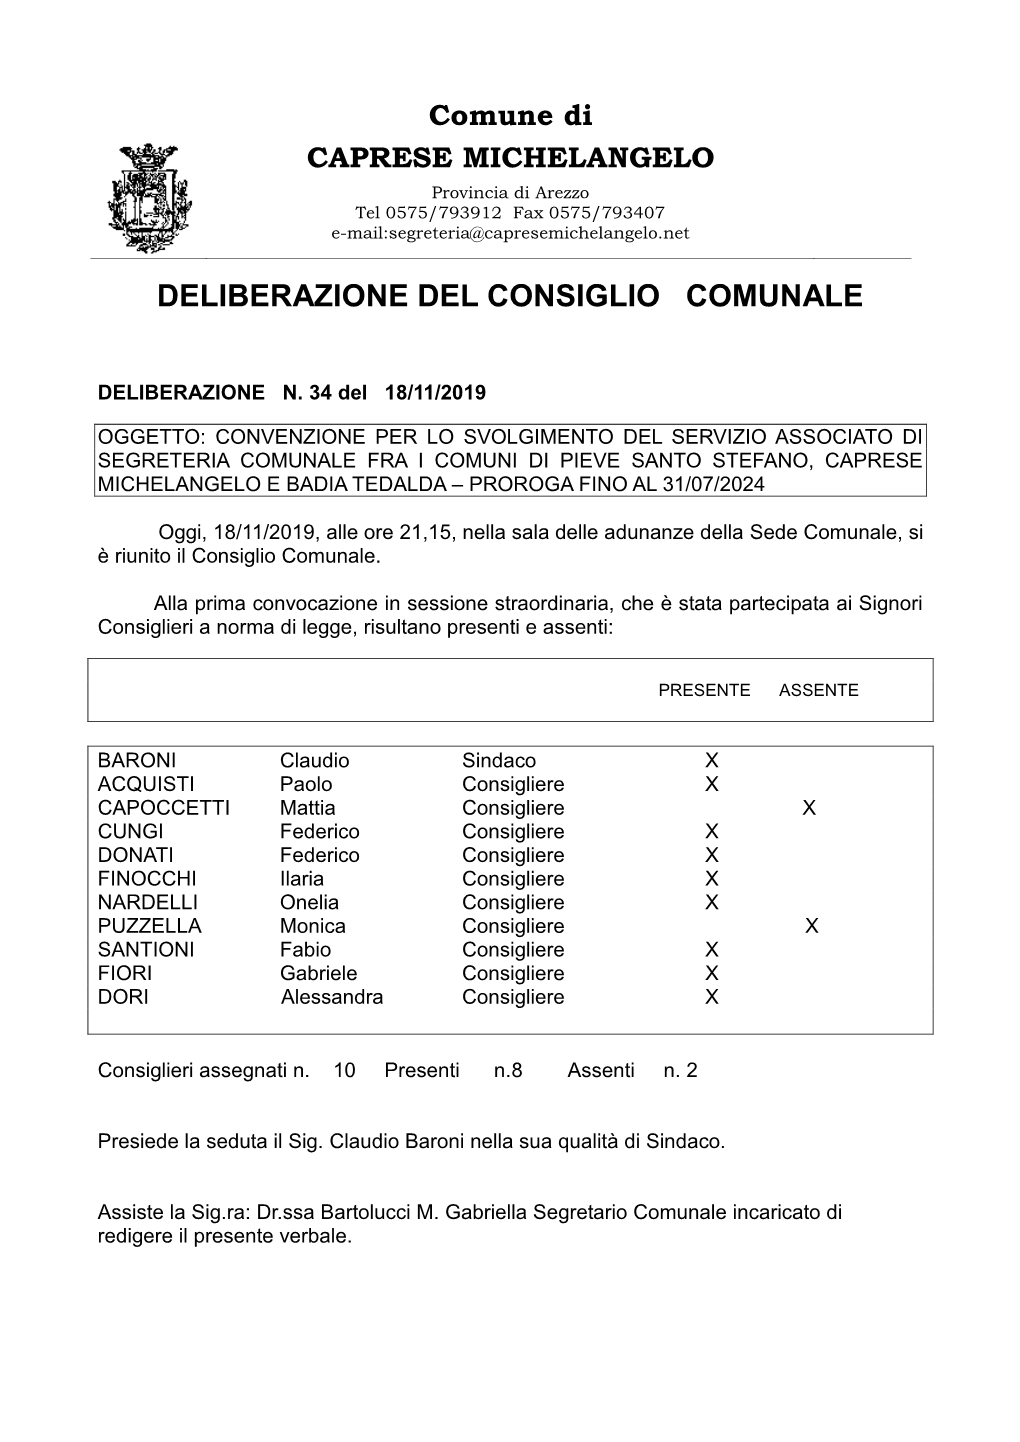 34 Proroga Convenzione Per Il Servizio Associato Di Segreteria Pieve Santo Stefano Caprese Michelangelo Badia Tedalda